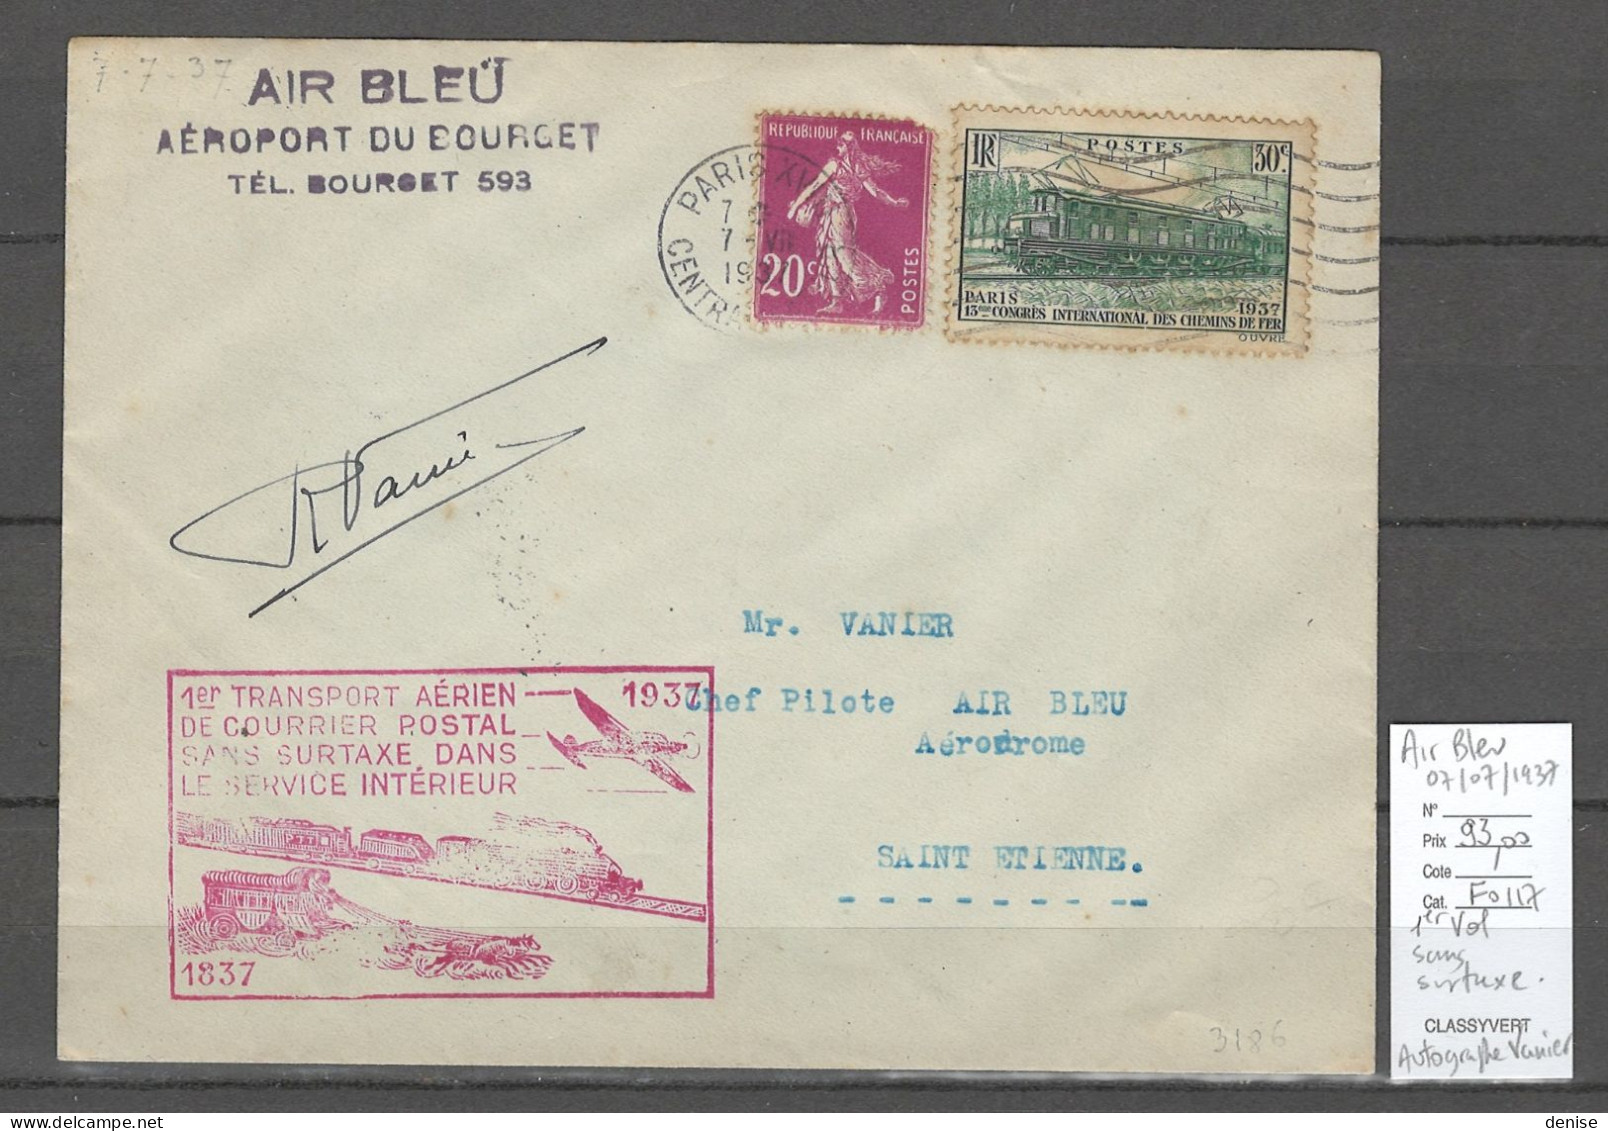 France - 1er Service Postal SANS SURTAXE - AIR BLEU - AUTOGRAPHE DU PILOTE VANIER - 1937 - 1927-1959 Covers & Documents